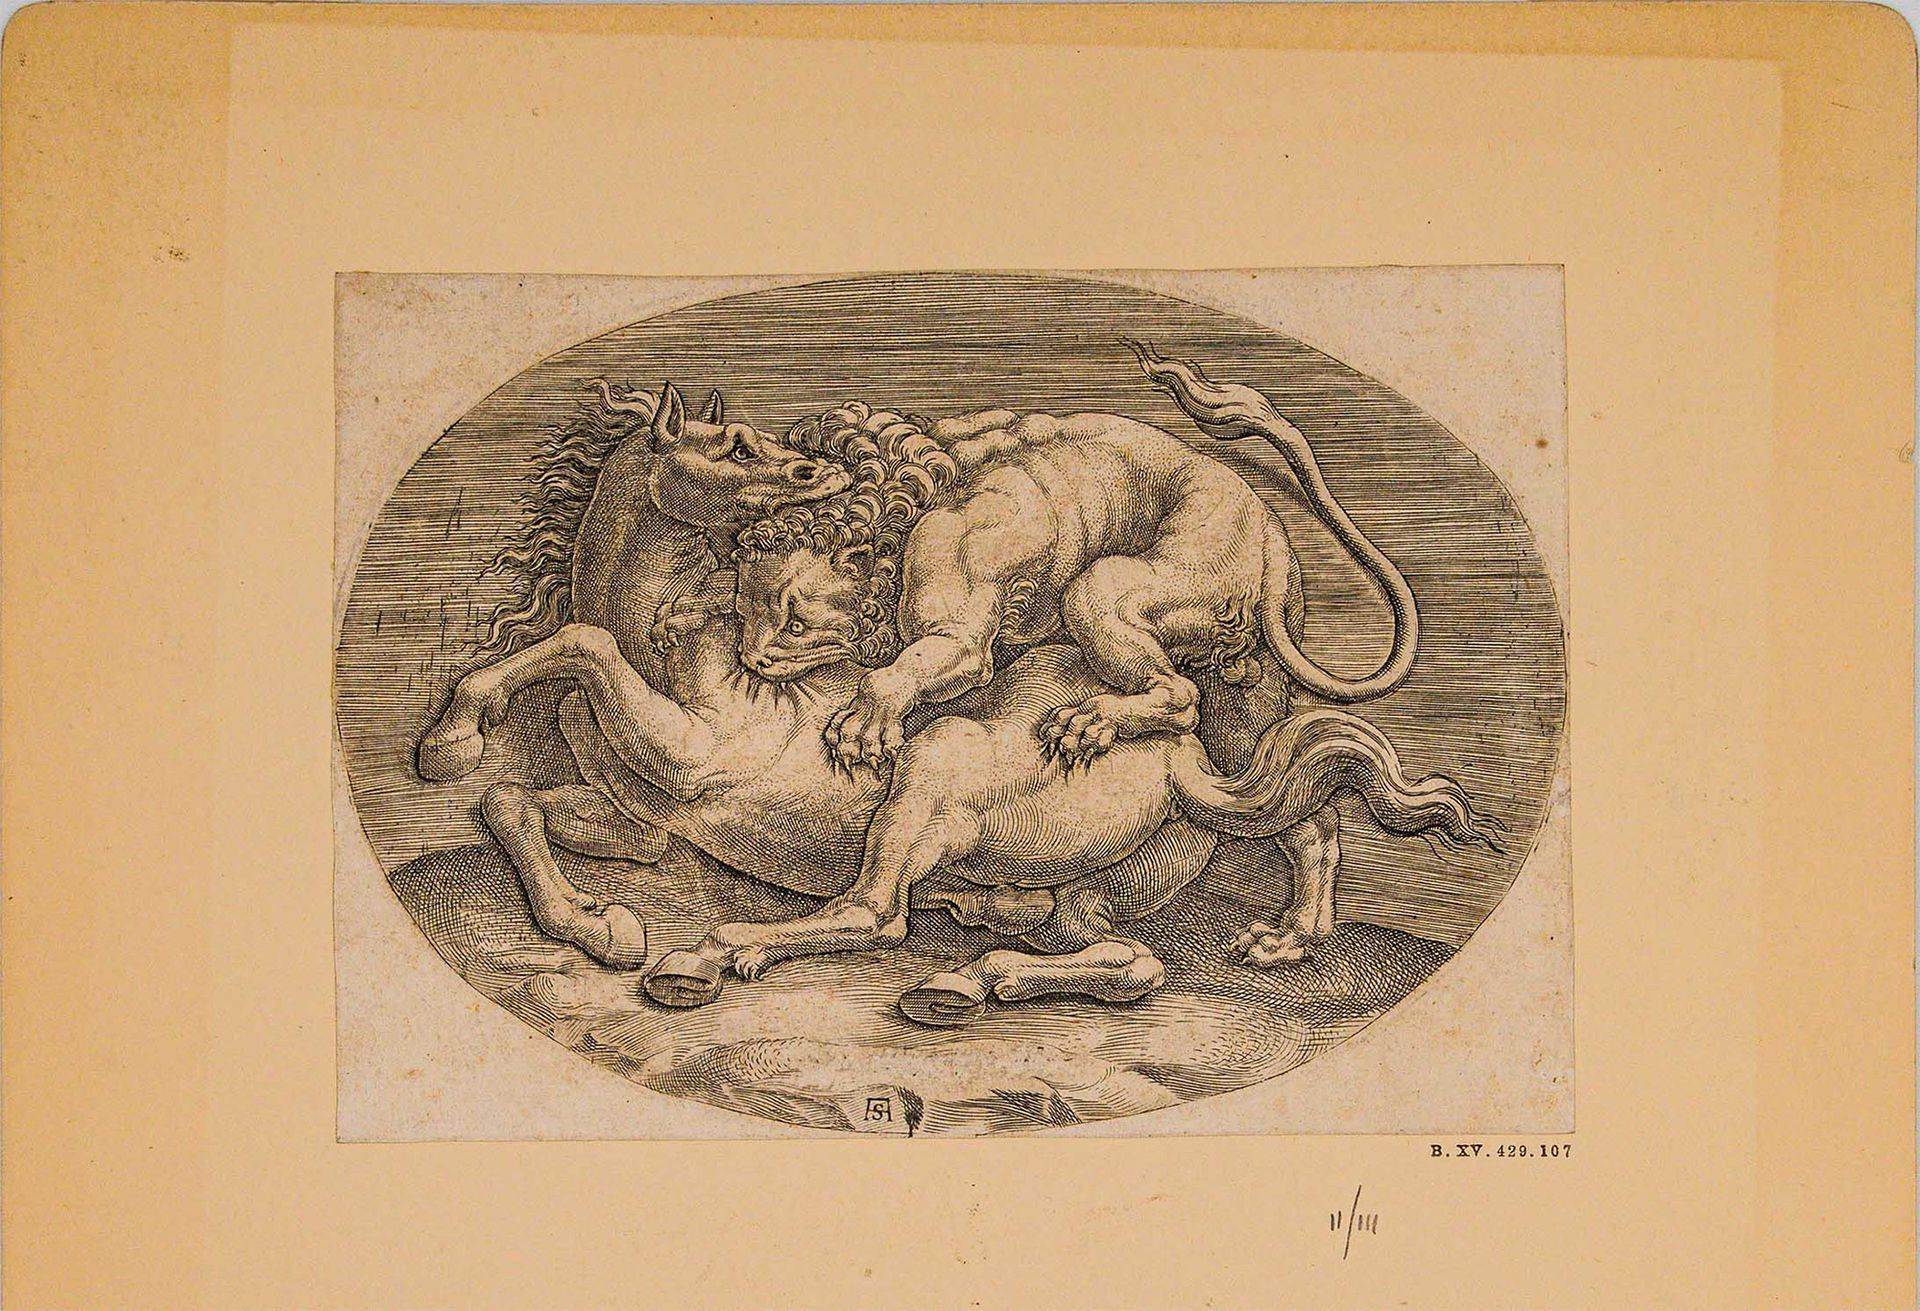 Null Adamo Scultori (Mantua 1530 - Mantua 1585), Kampf zwischen Löwe und Pferd

&hellip;